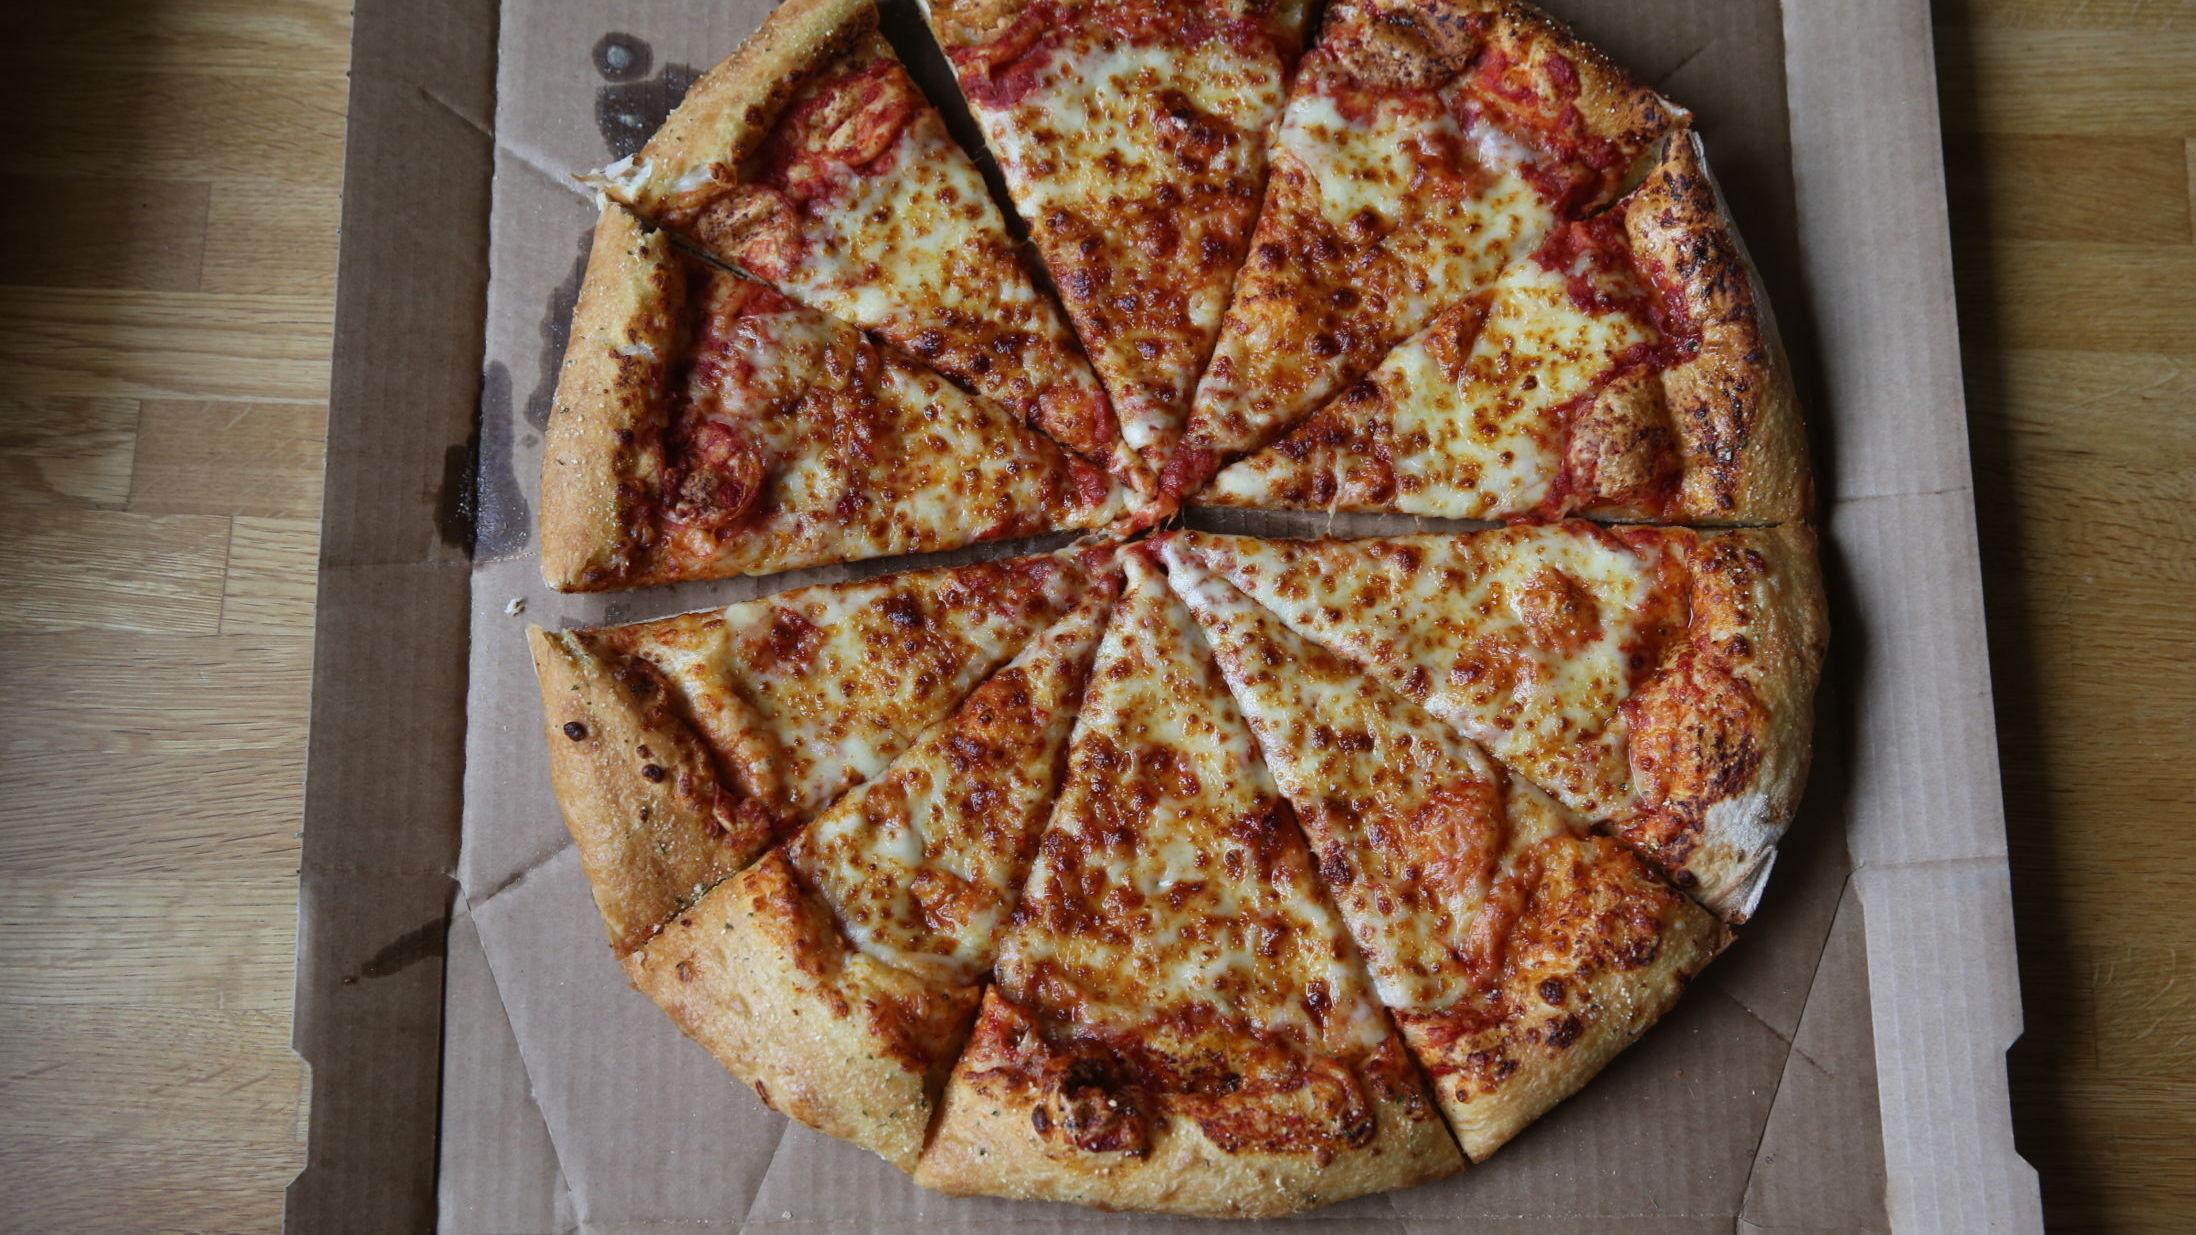 GYLLEN SKORPE: – Ikke et helt elendig alternativ til en frossen variant, skriver anmelderen om denne margherita-pizzaen. Foto: Trond Solberg/VG